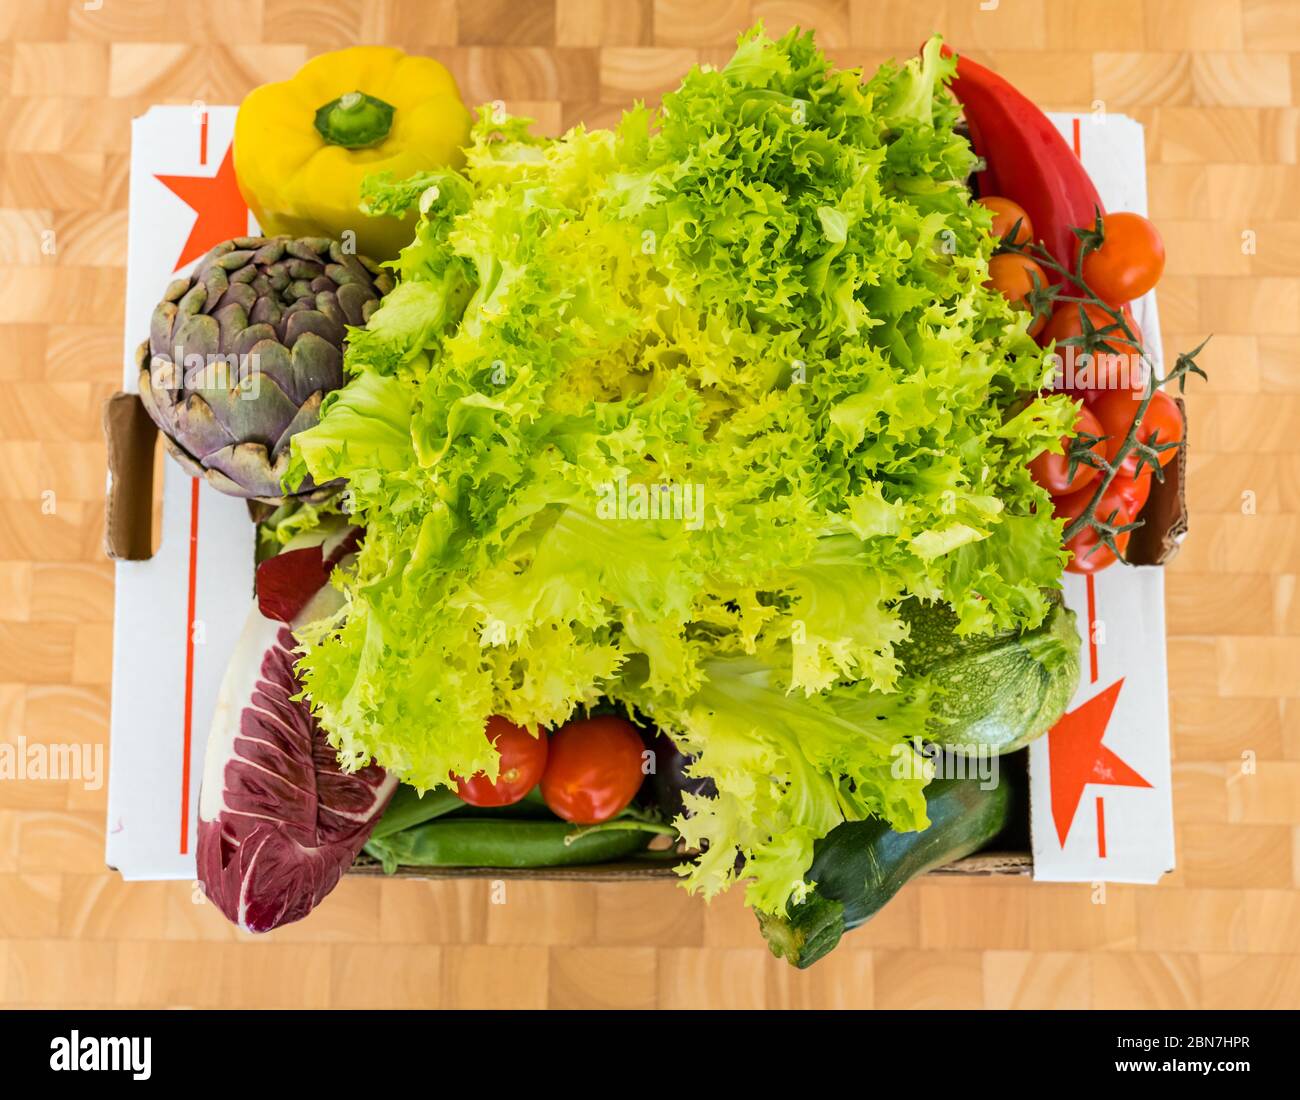 Gemüsebox mit Frisée-Salat, Paprika, Endive, Aubergine, Artischocke, Zucchini, Erbsen und Kirschtomaten Stockfoto